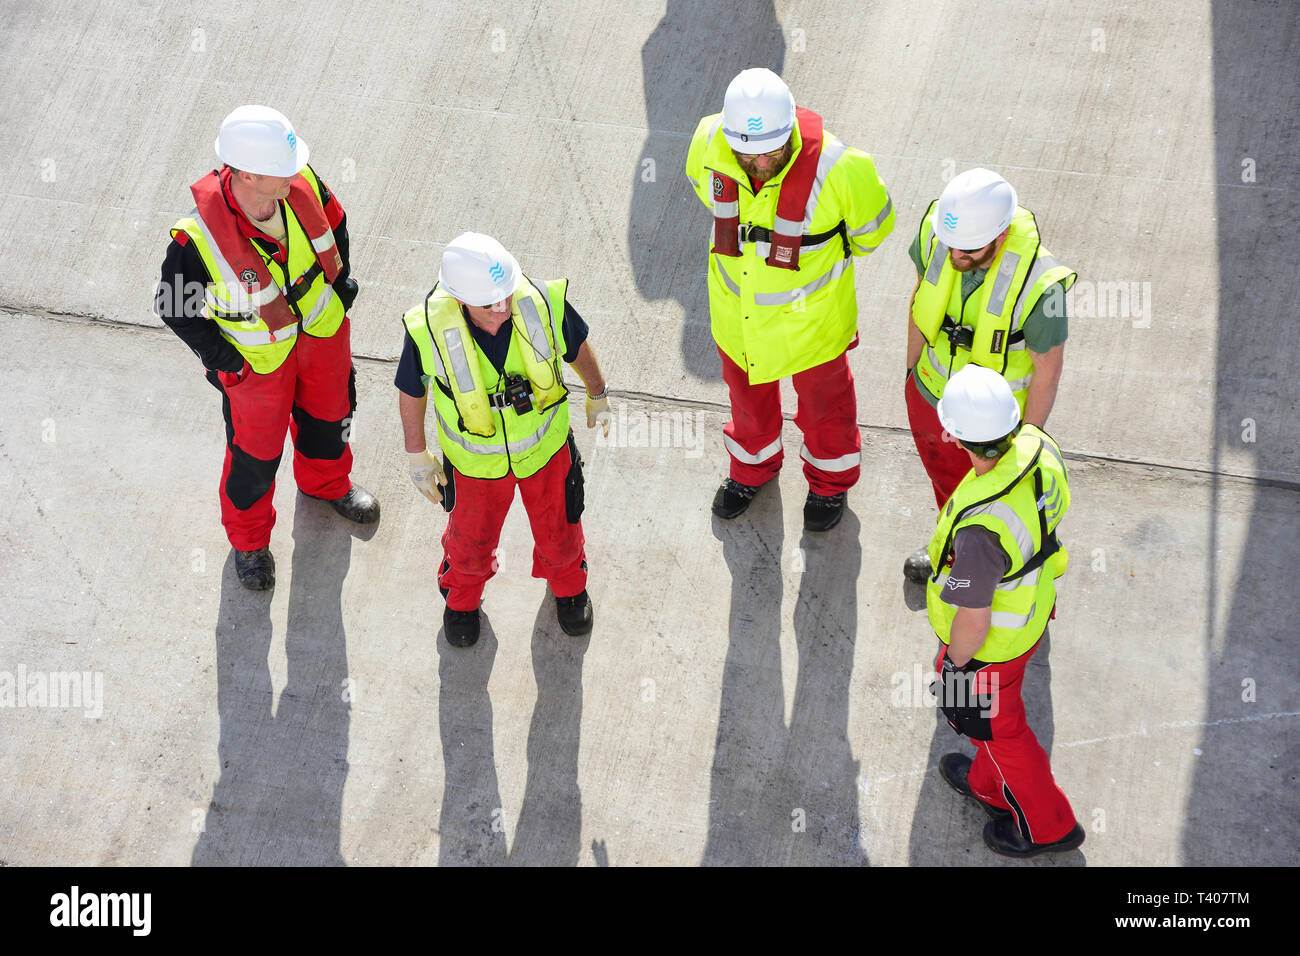 Des ouvriers avec des casques sur le quai des navires de croisière, Lerwick, Shetland, les îles du Nord, Ecosse, Royaume-Uni Banque D'Images